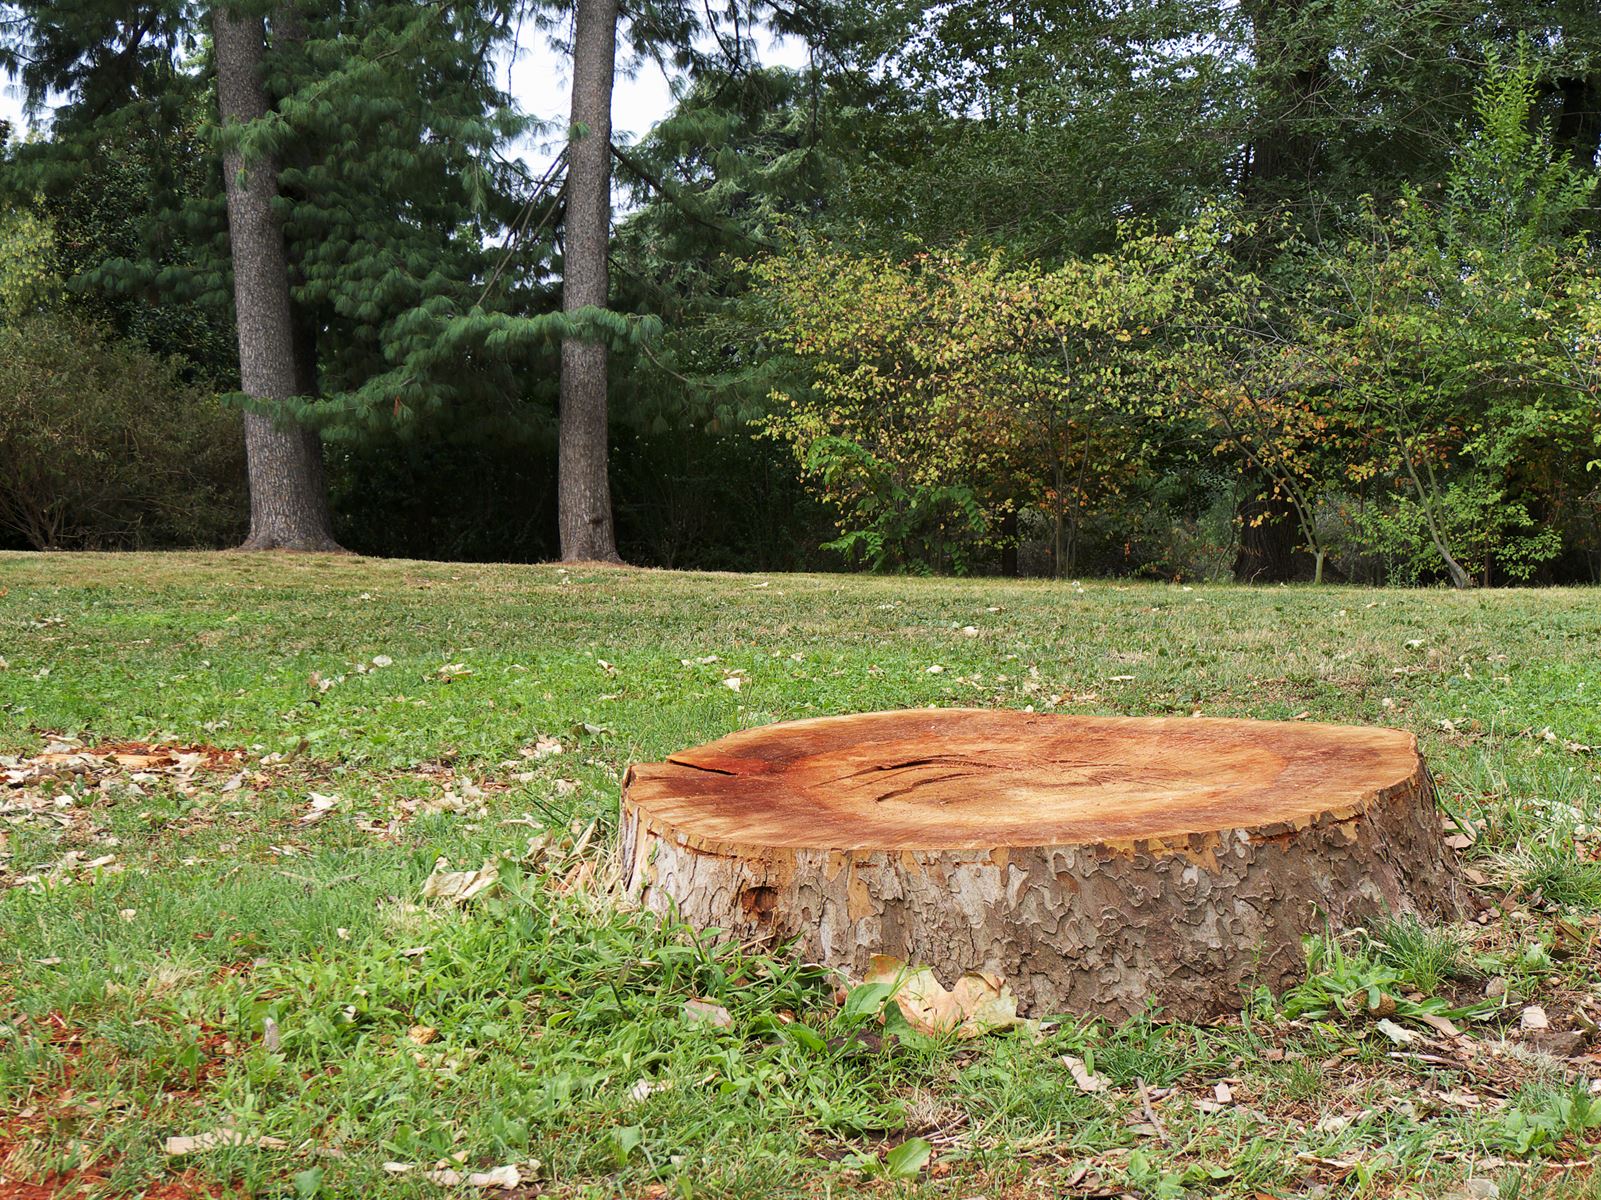 Tree stump in a field